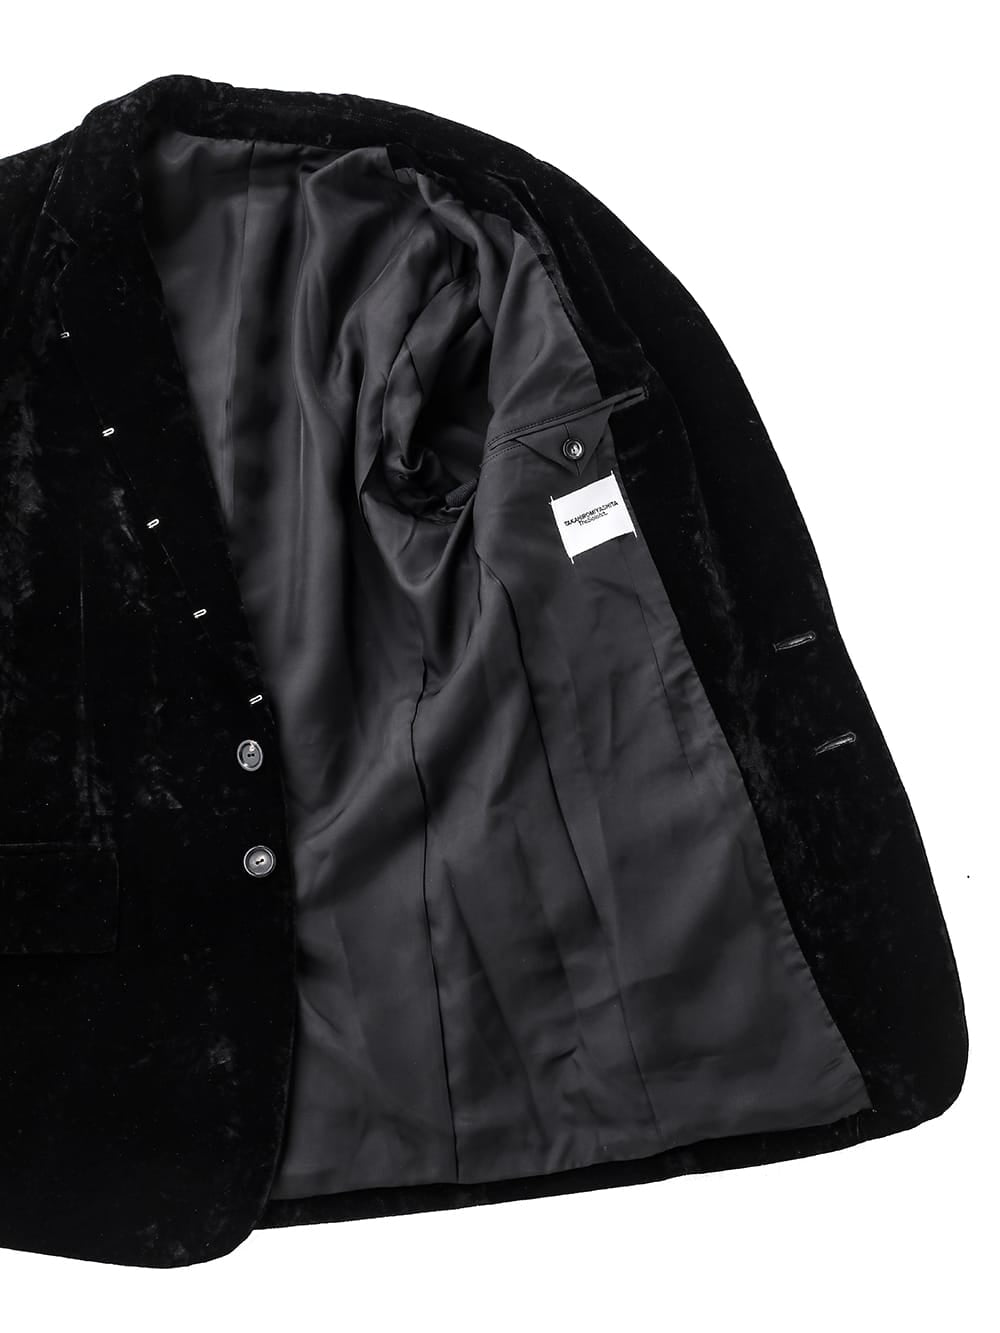 right - left jacket.(velvet)